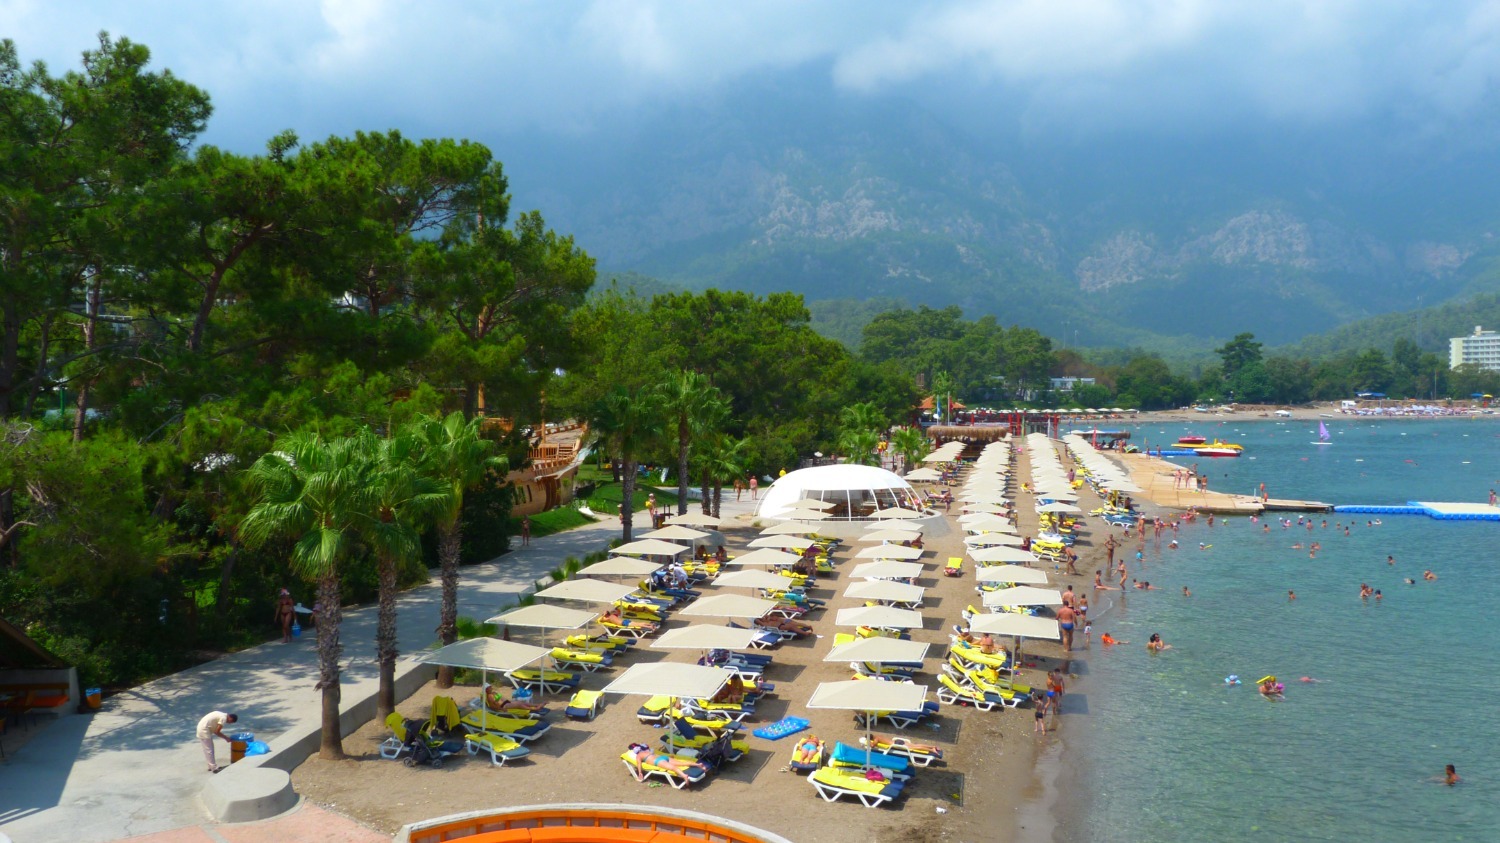 Пляжи в турецких отелях начинают заполняться только 9 часам утра